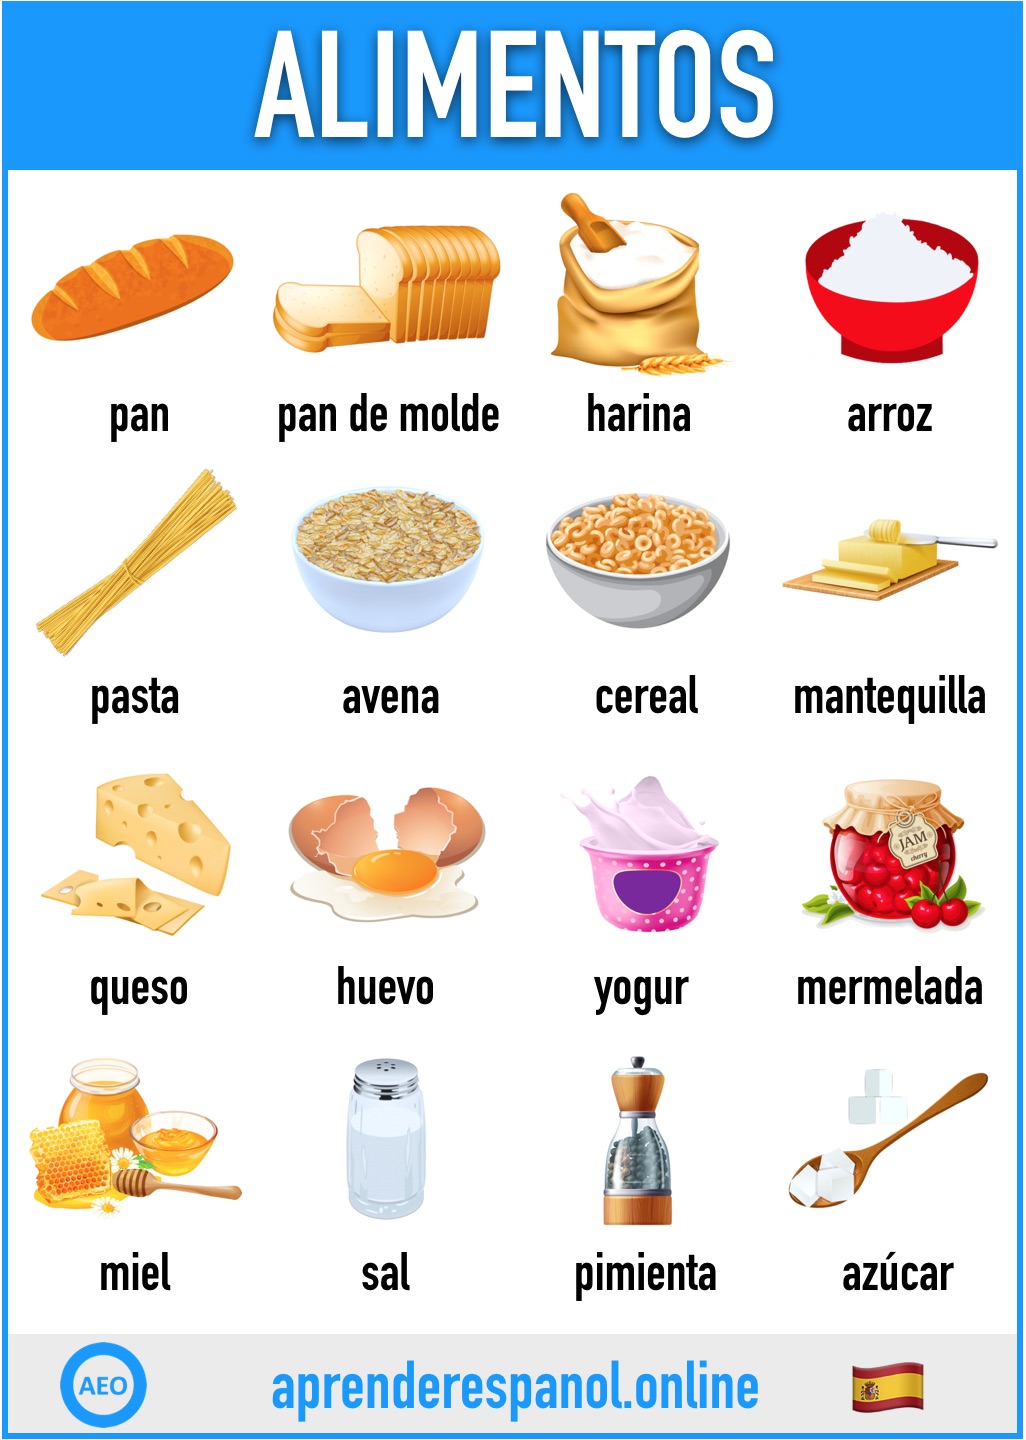 alimentos en español - aprender español online - vocabulario de los alimentos en español